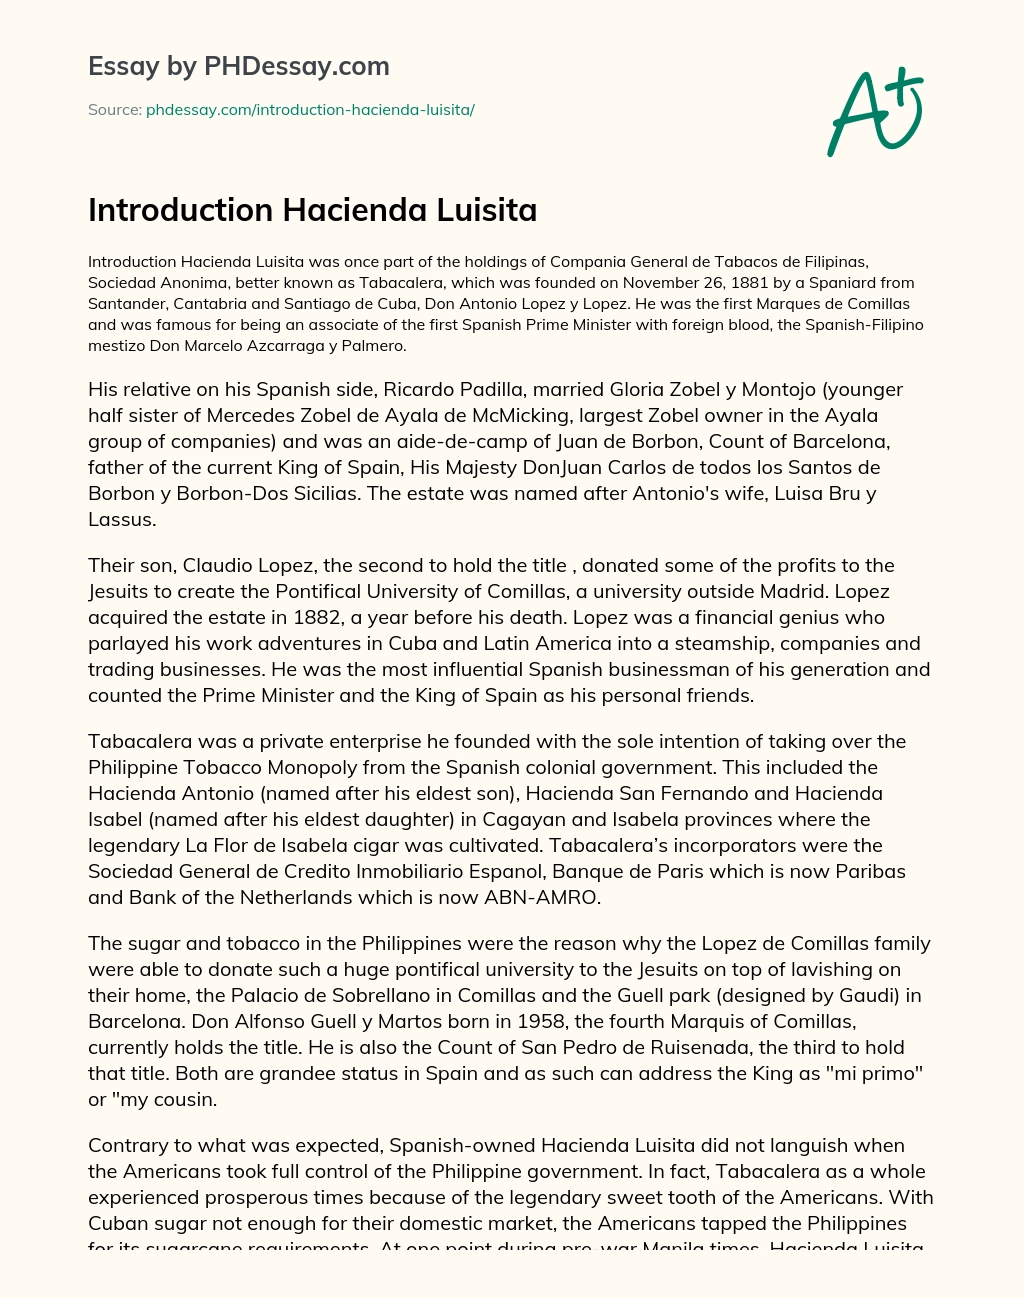 Introduction Hacienda Luisita essay